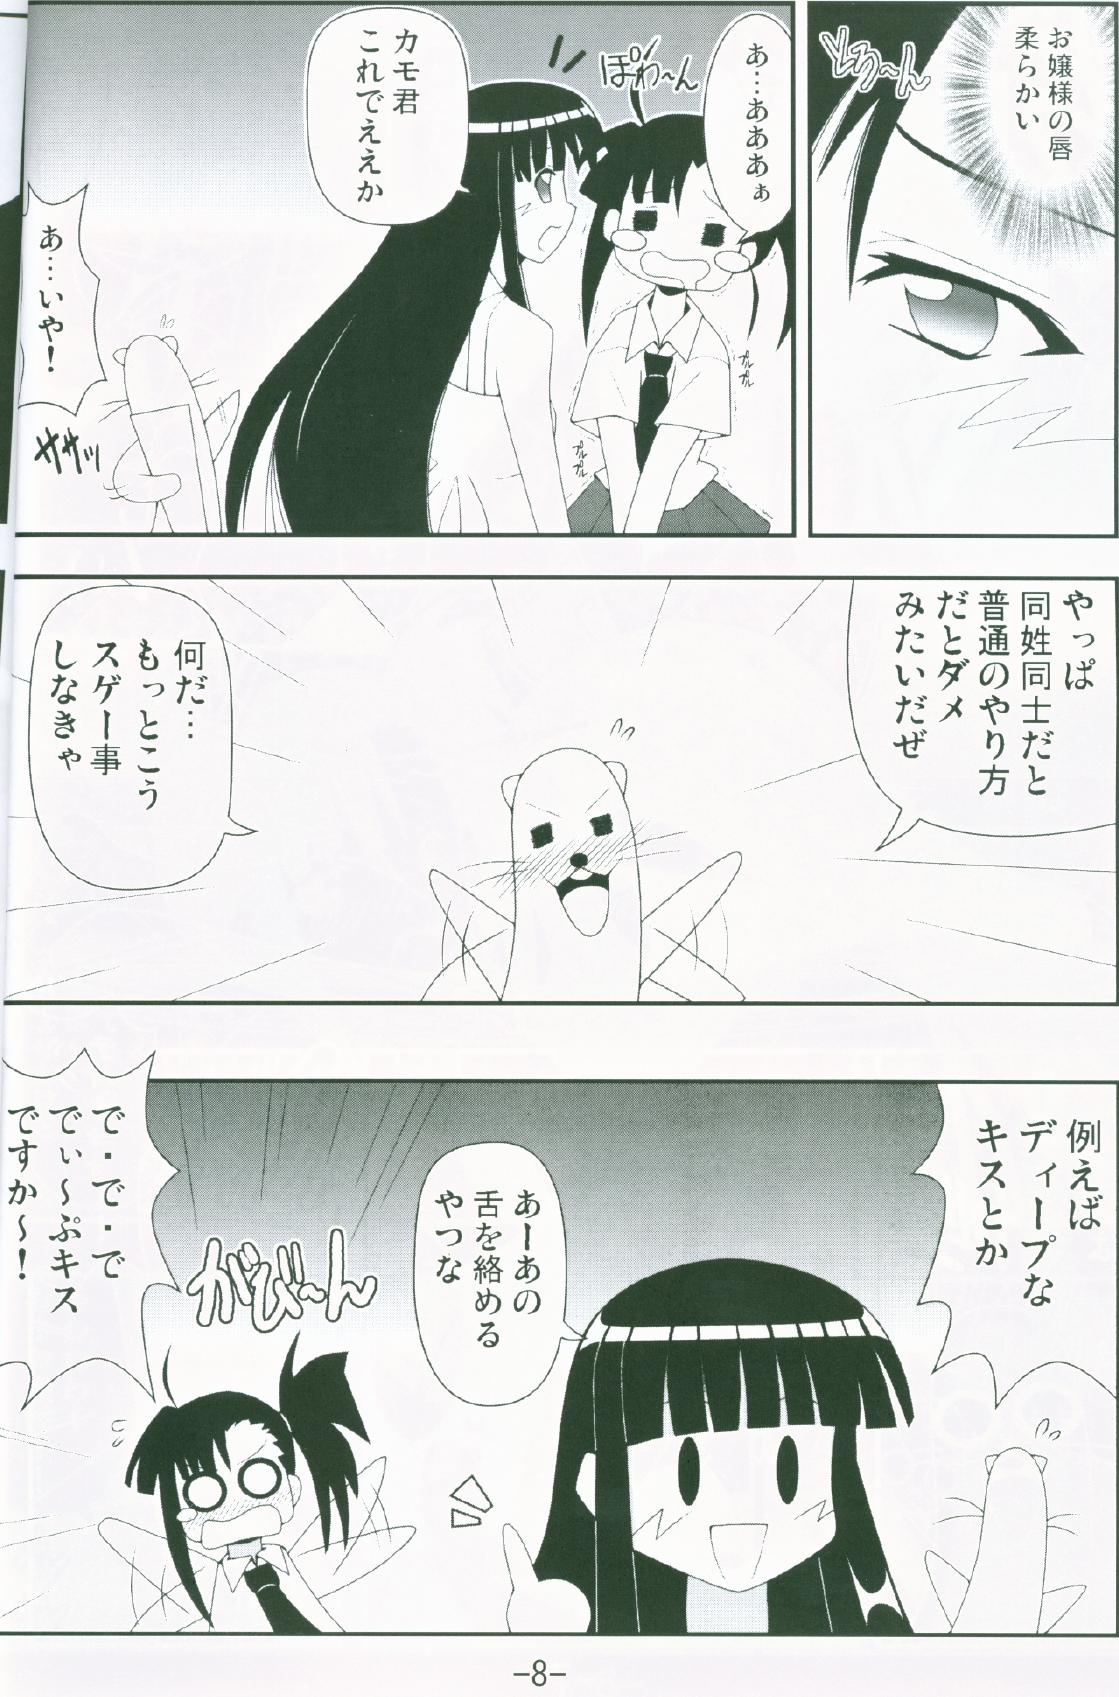 With Gurimaga ~ Yamato Shiko - Mahou sensei negima Pija - Page 6